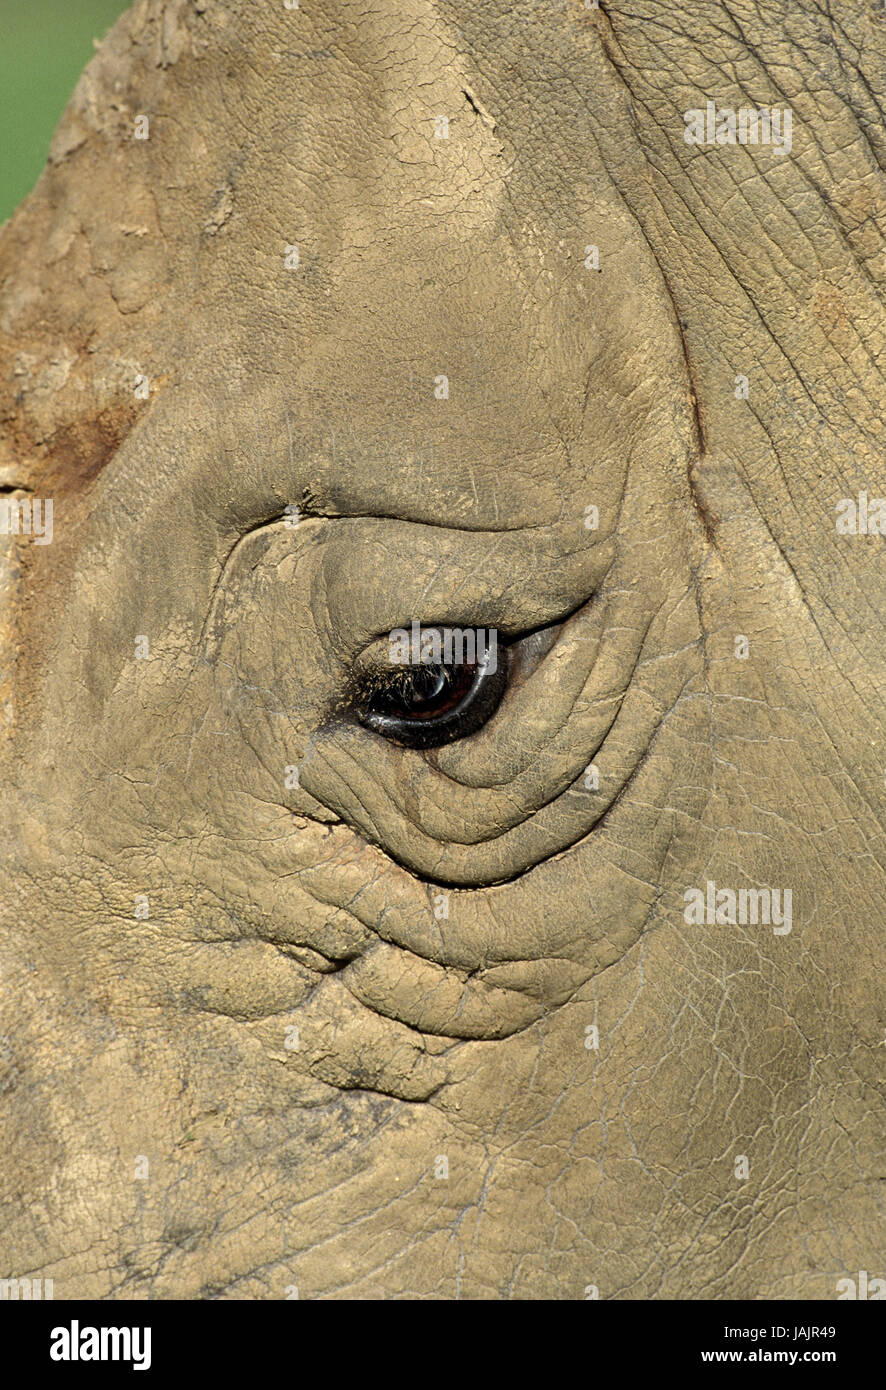 A bocca larga rinoceronte,Ceratotherium simum,medium close-up,eye,Sud Africa, Foto Stock